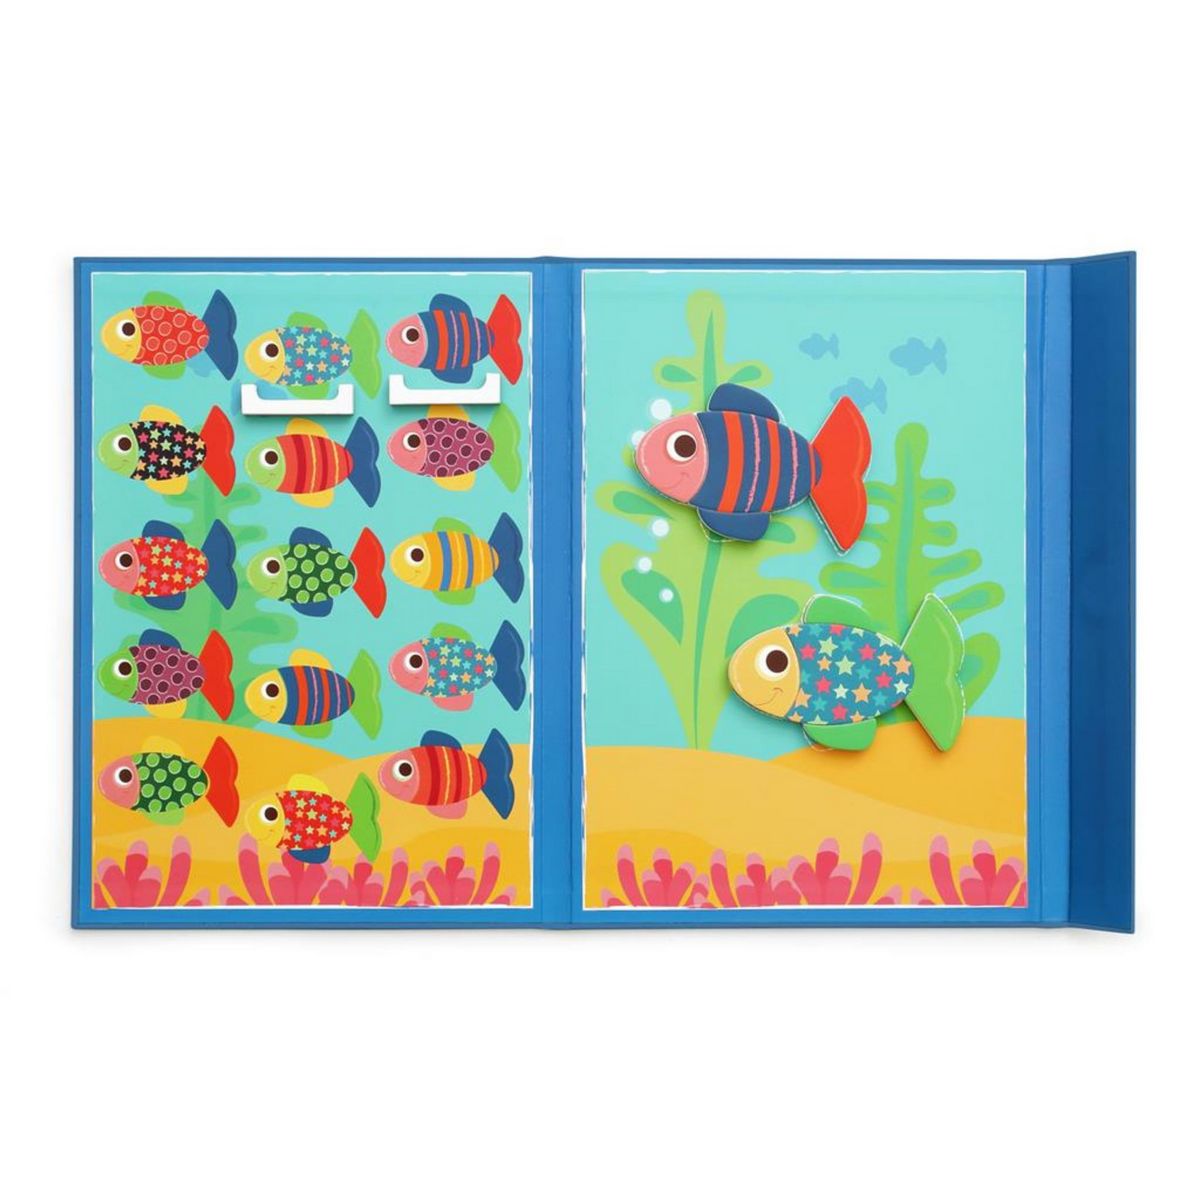 scratch livre edulogic poissons un jeu enfant une idee cadeau chez ugo et lea (2)